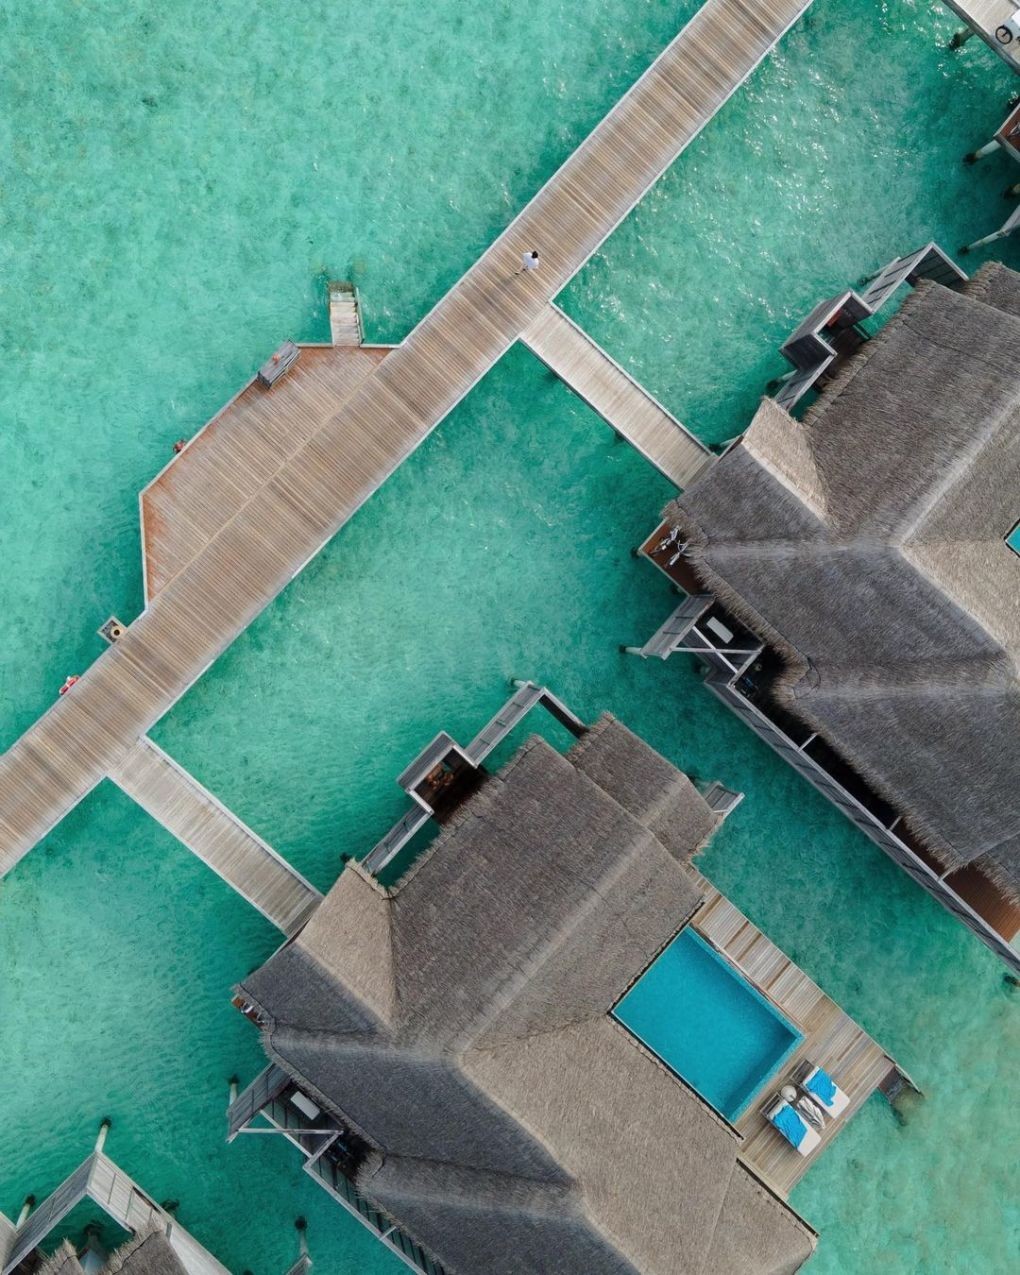 Khu nghỉ dưỡng Quang Vinh lựa chọn thuộc hàng cao cấp ở Maldives. Tất cả các villa đều có hồ bơi riêng, rộng rãi, với diện tích từ 260 m2 đến 2.730 m2 đầy đủ tiện nghi, chia làm 3 loại chính là beach pool villa, over water pool villa và các hạng suite từ 2-3 phòng ngủ.